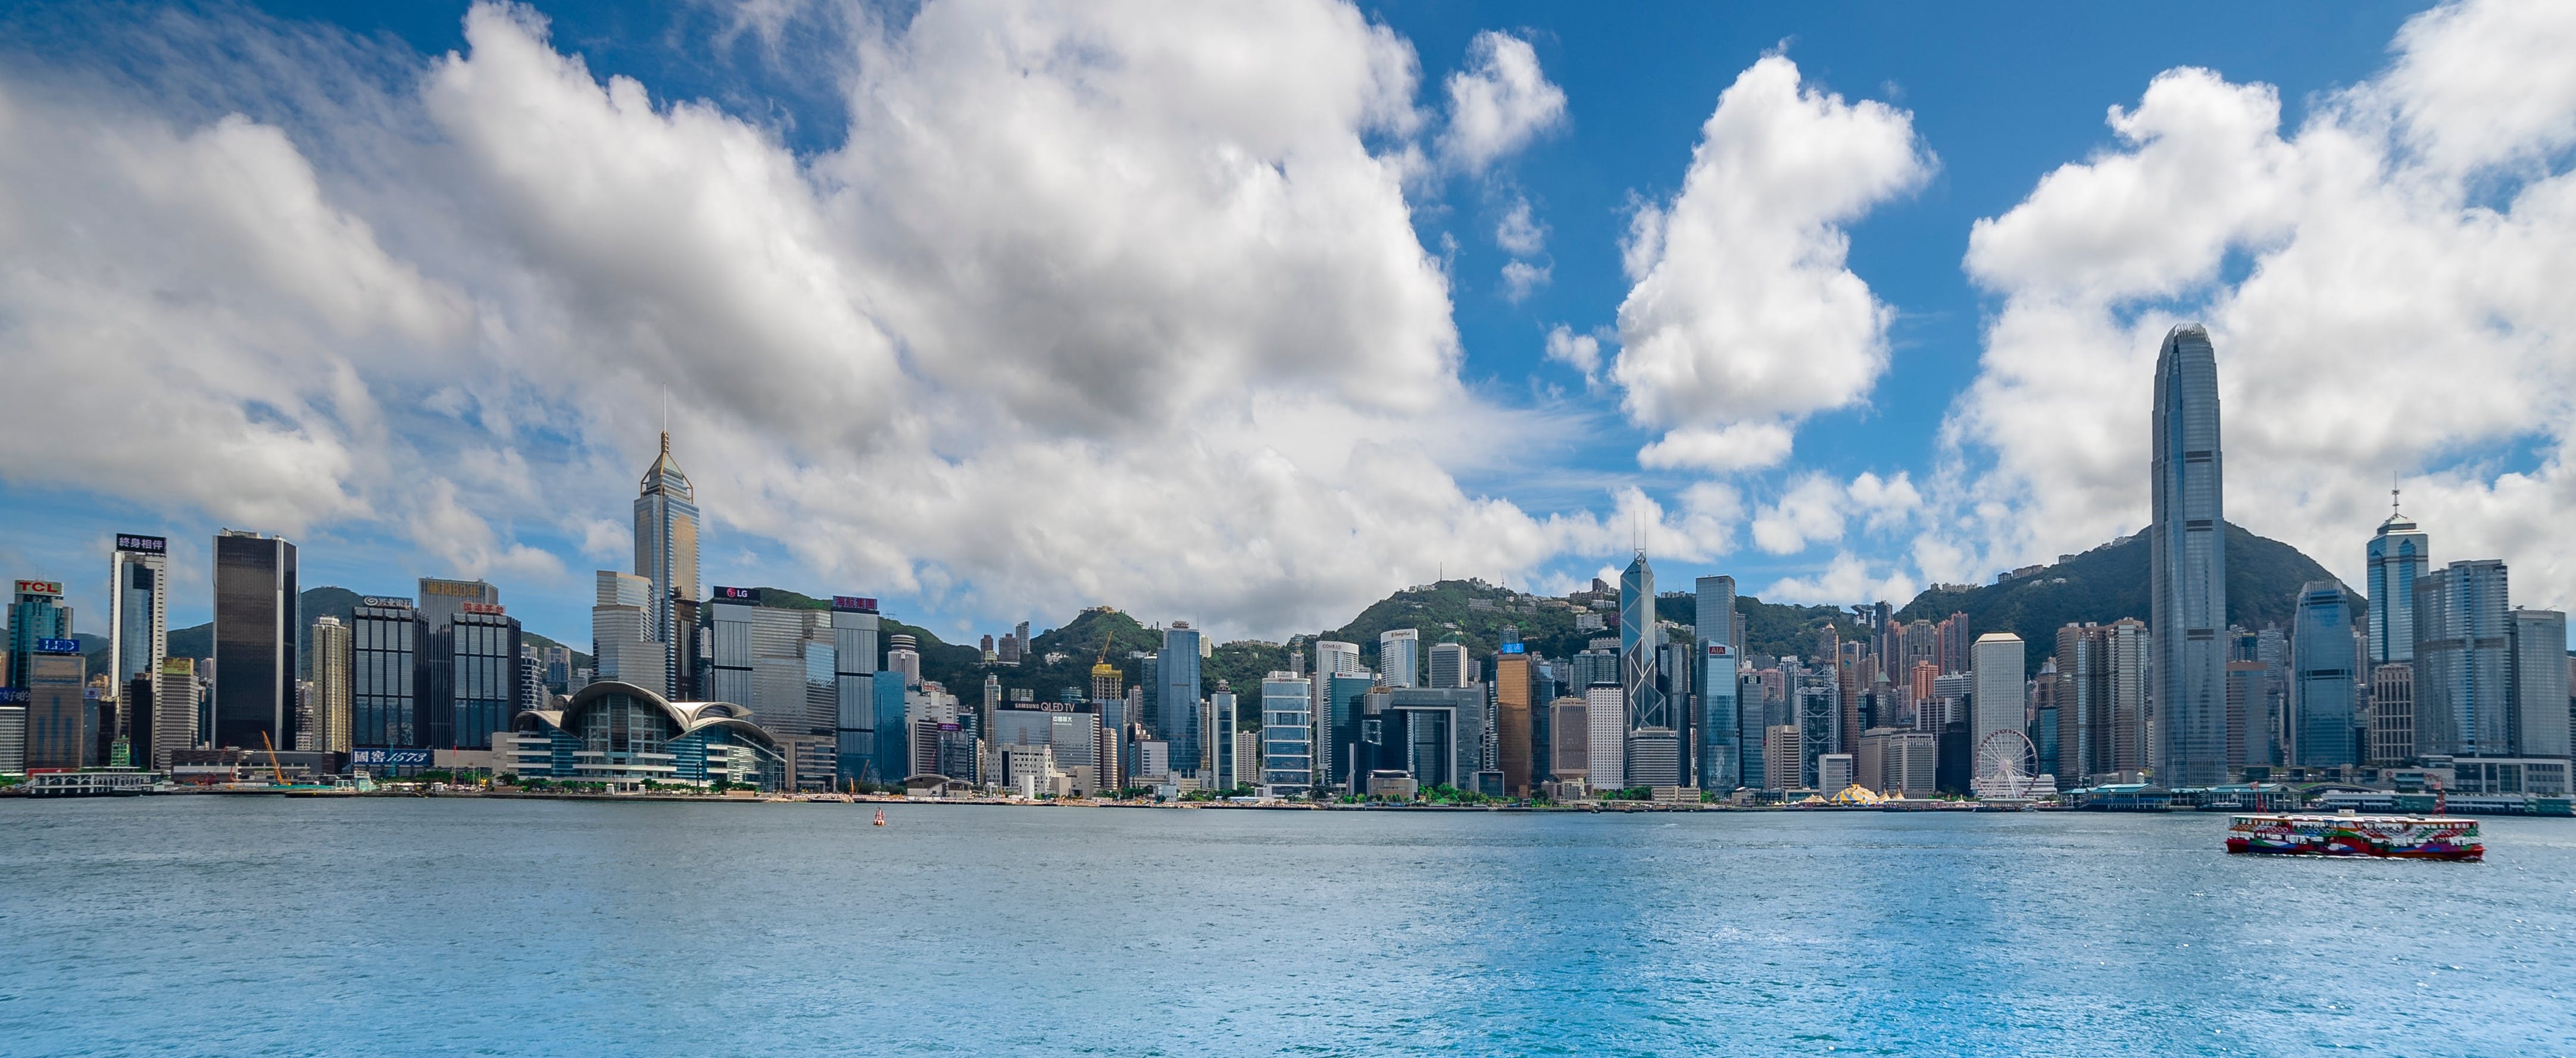 Las bolsas Hong Kong y Shenzhen se unen para desarrollar el mercado de carbono de Greater Bay Area